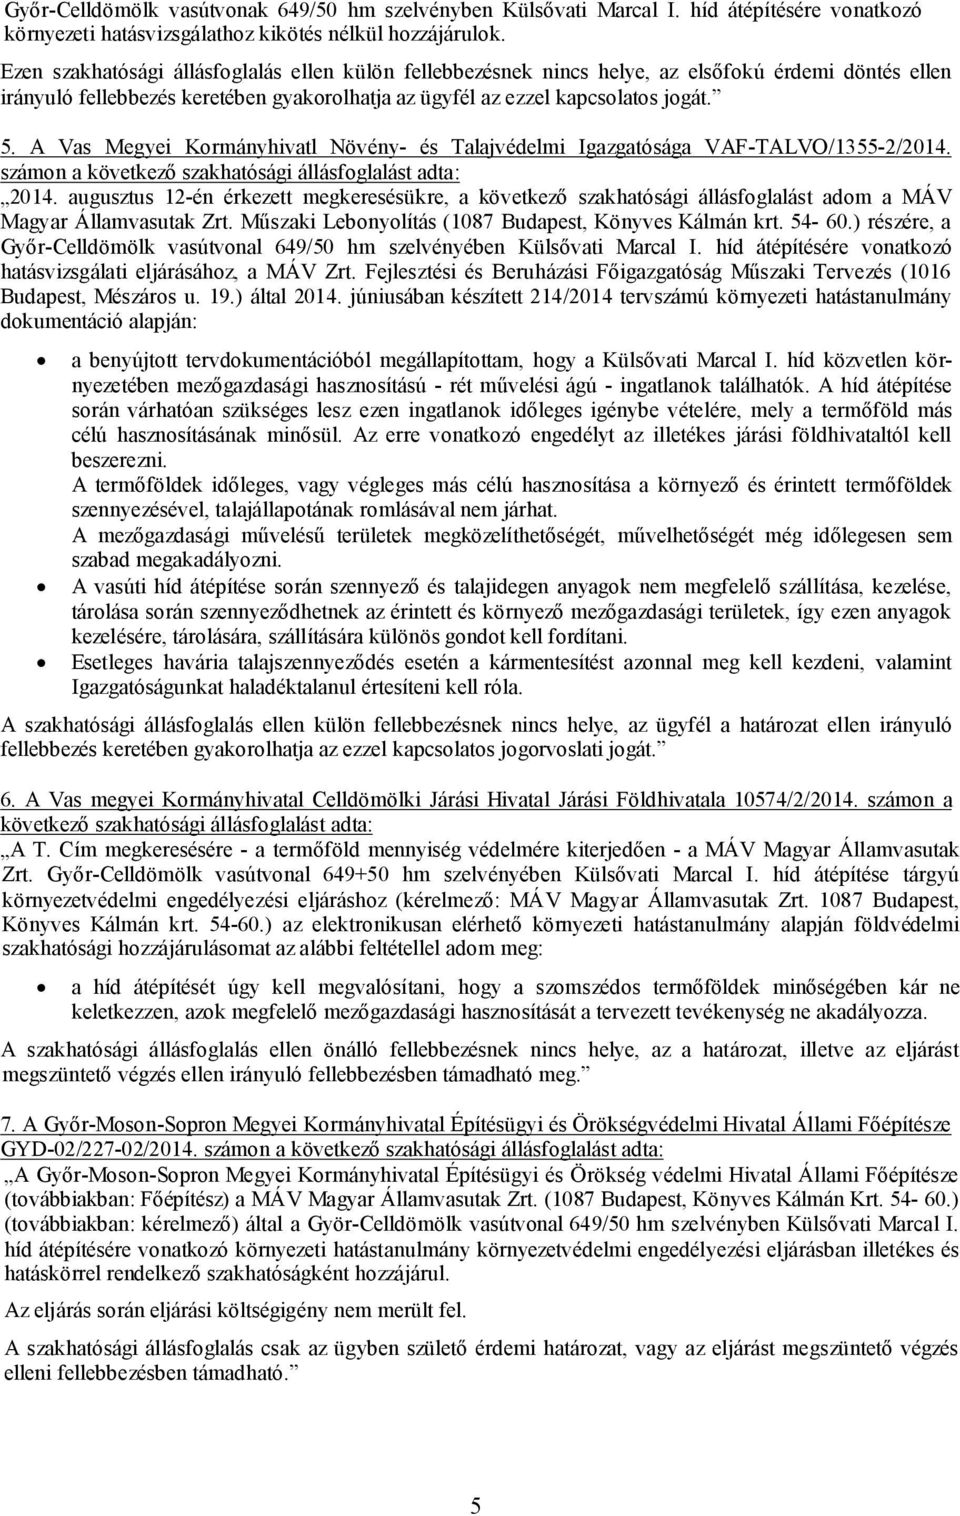 A Vas Megyei Kormányhivatl Növény- és Talajvédelmi Igazgatósága VAF-TALVO/1355-2/2014. számon a következő szakhatósági állásfoglalást adta: 2014.